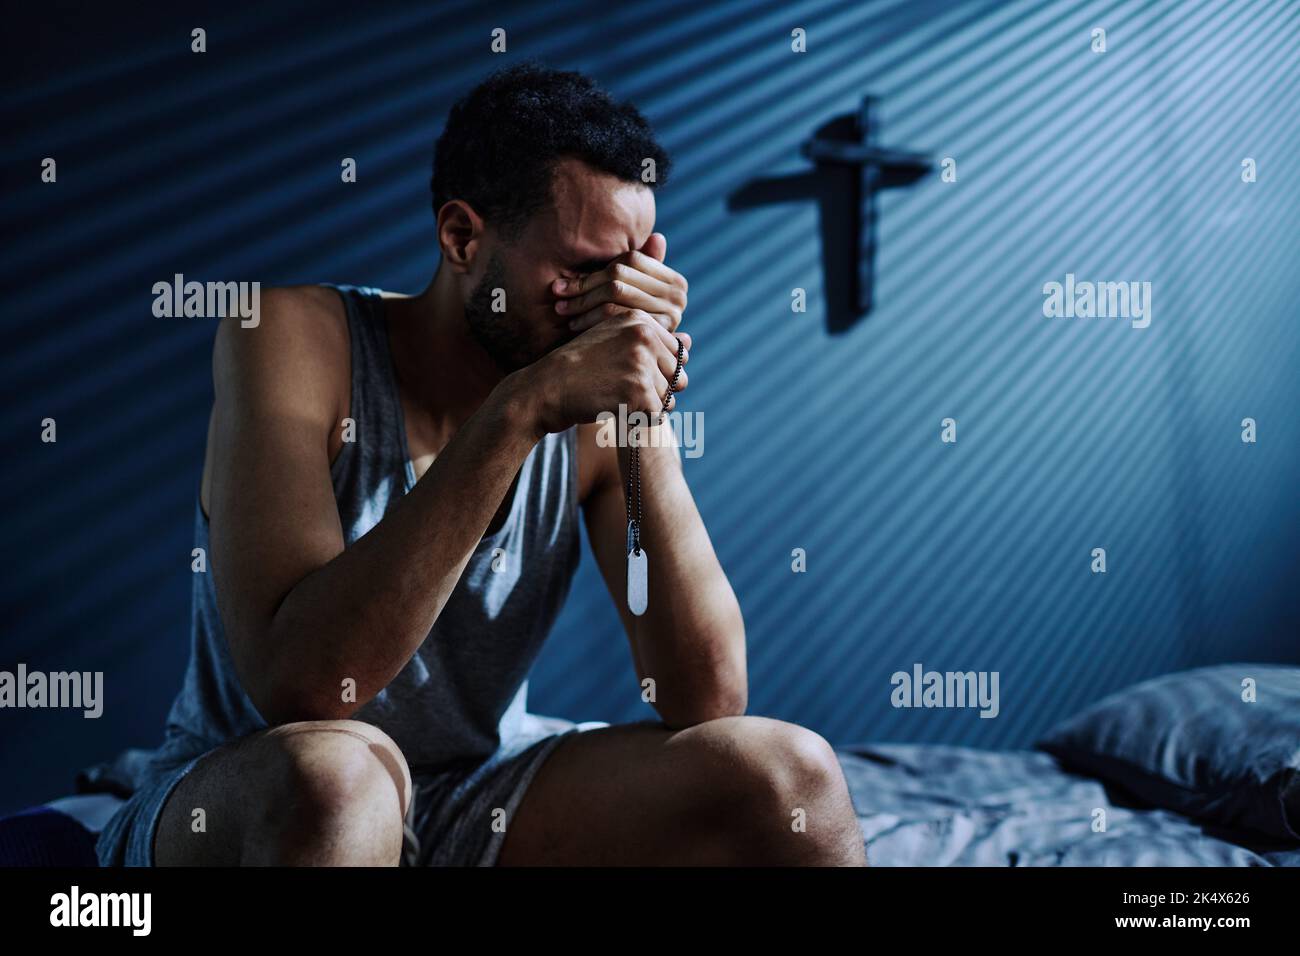 Junger depressiver Mann mit zwei Medaillons auf silberner Kette weint oder trauert über den Verlust von jemandem, den er liebte, während er nachts auf dem Bett saß Stockfoto